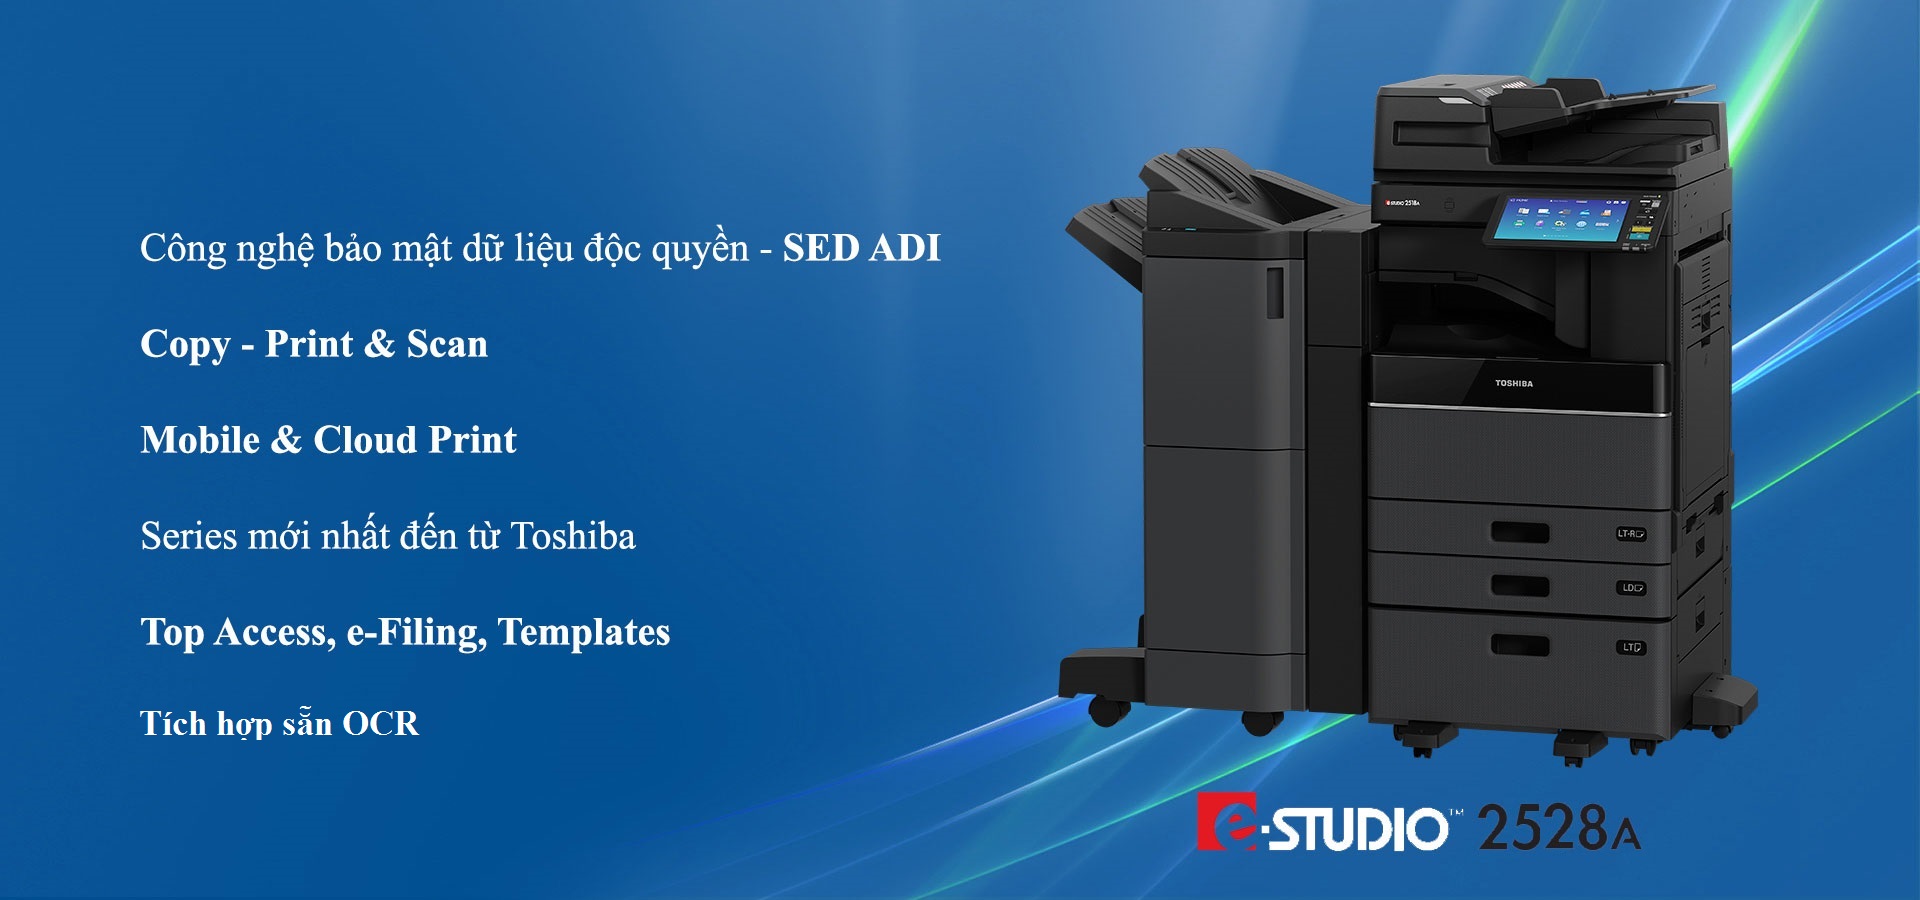 Máy photocopy đa chức năng chủ lực của hãng Toshiba